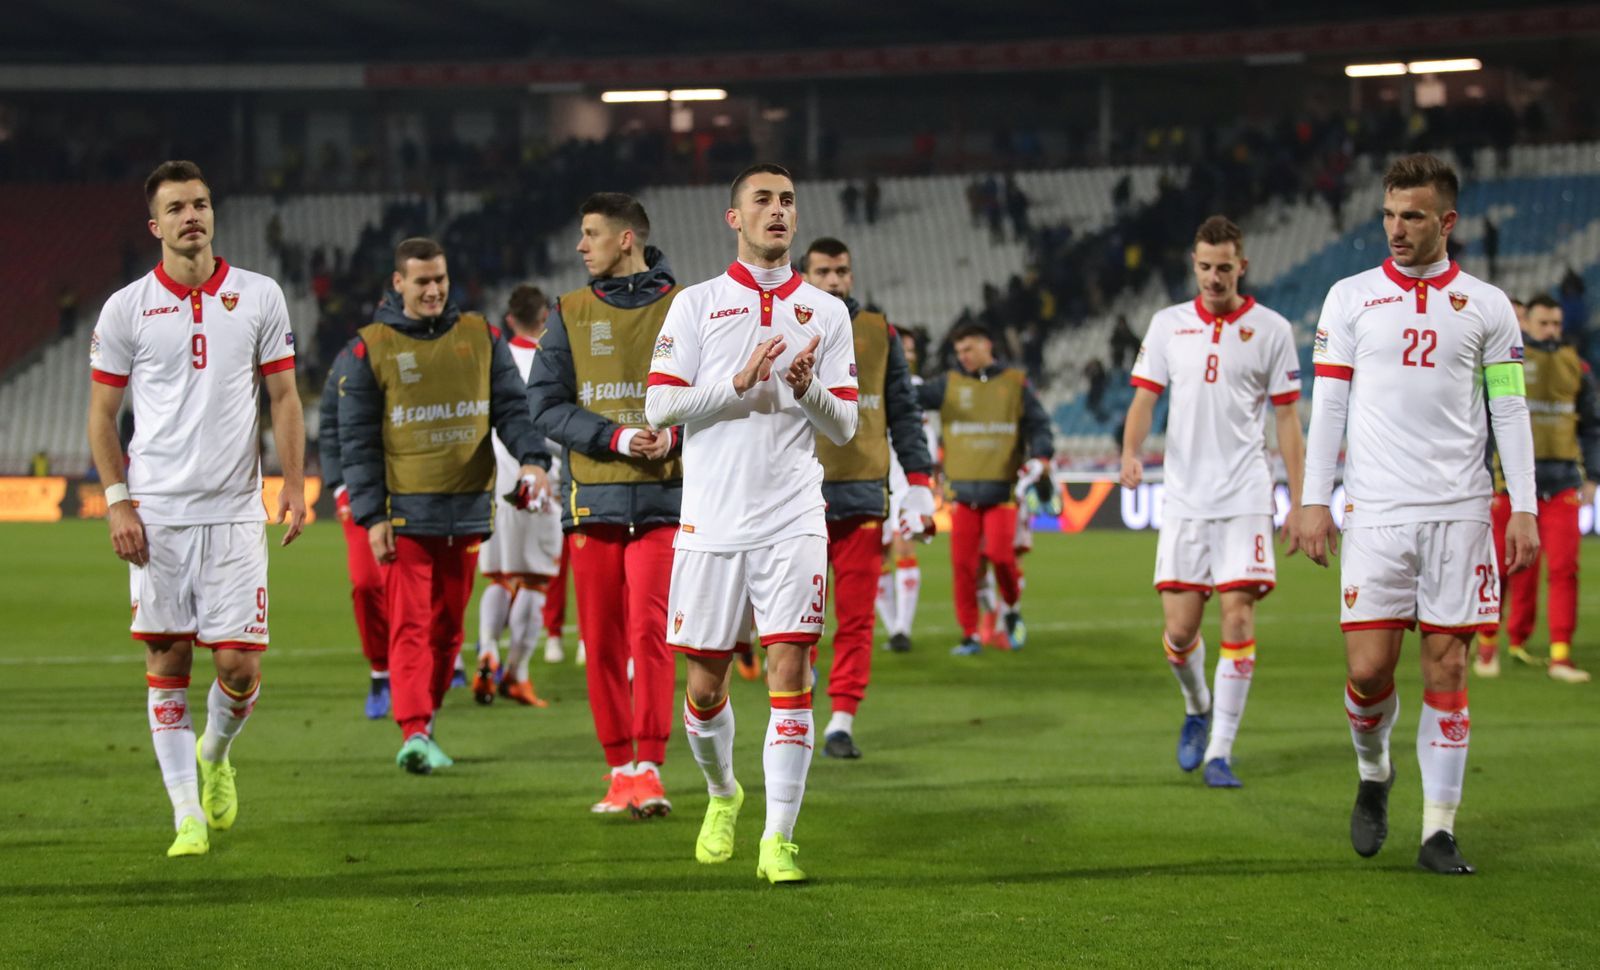 fotbal, Liga národů 2018, Srbsko - Černá Hora, fotbalisté Černé Hory po zápase